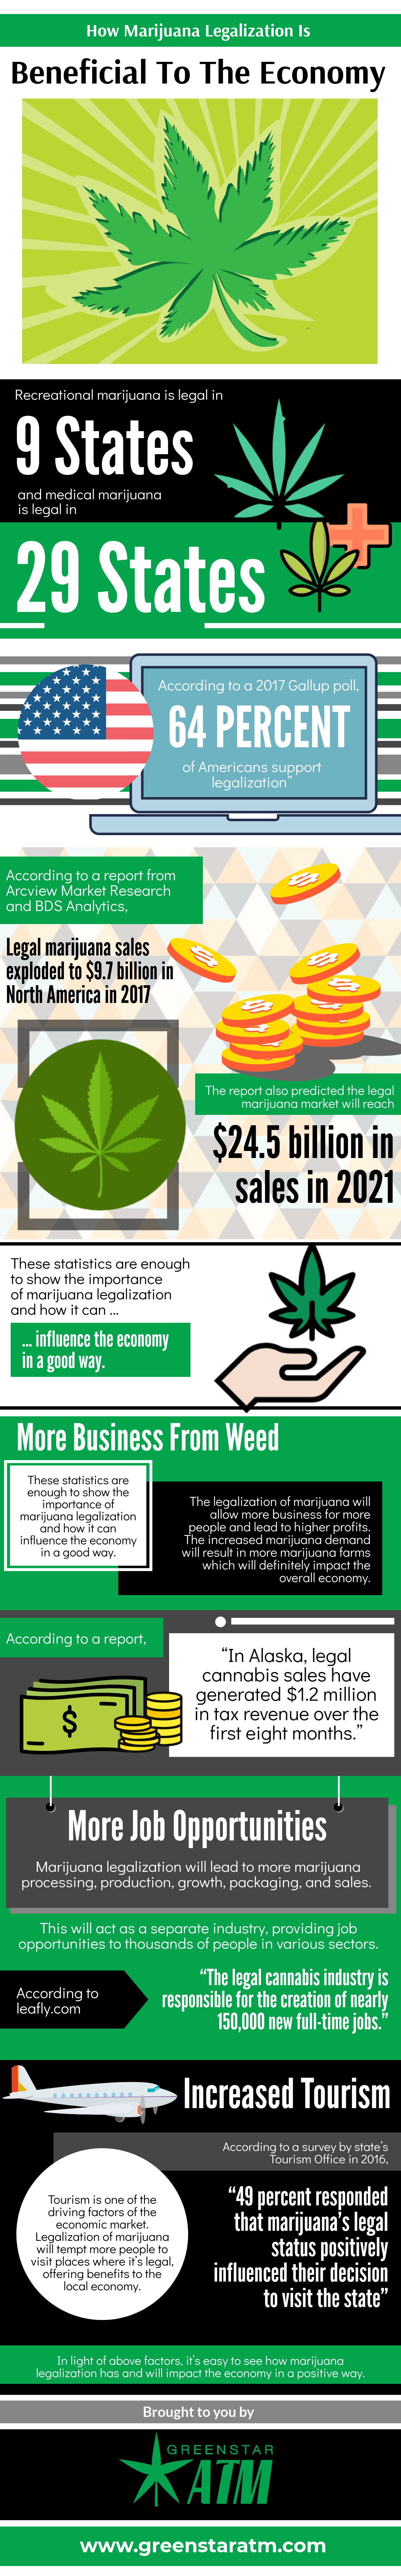 Legalization of Marijuana Benefits Economy